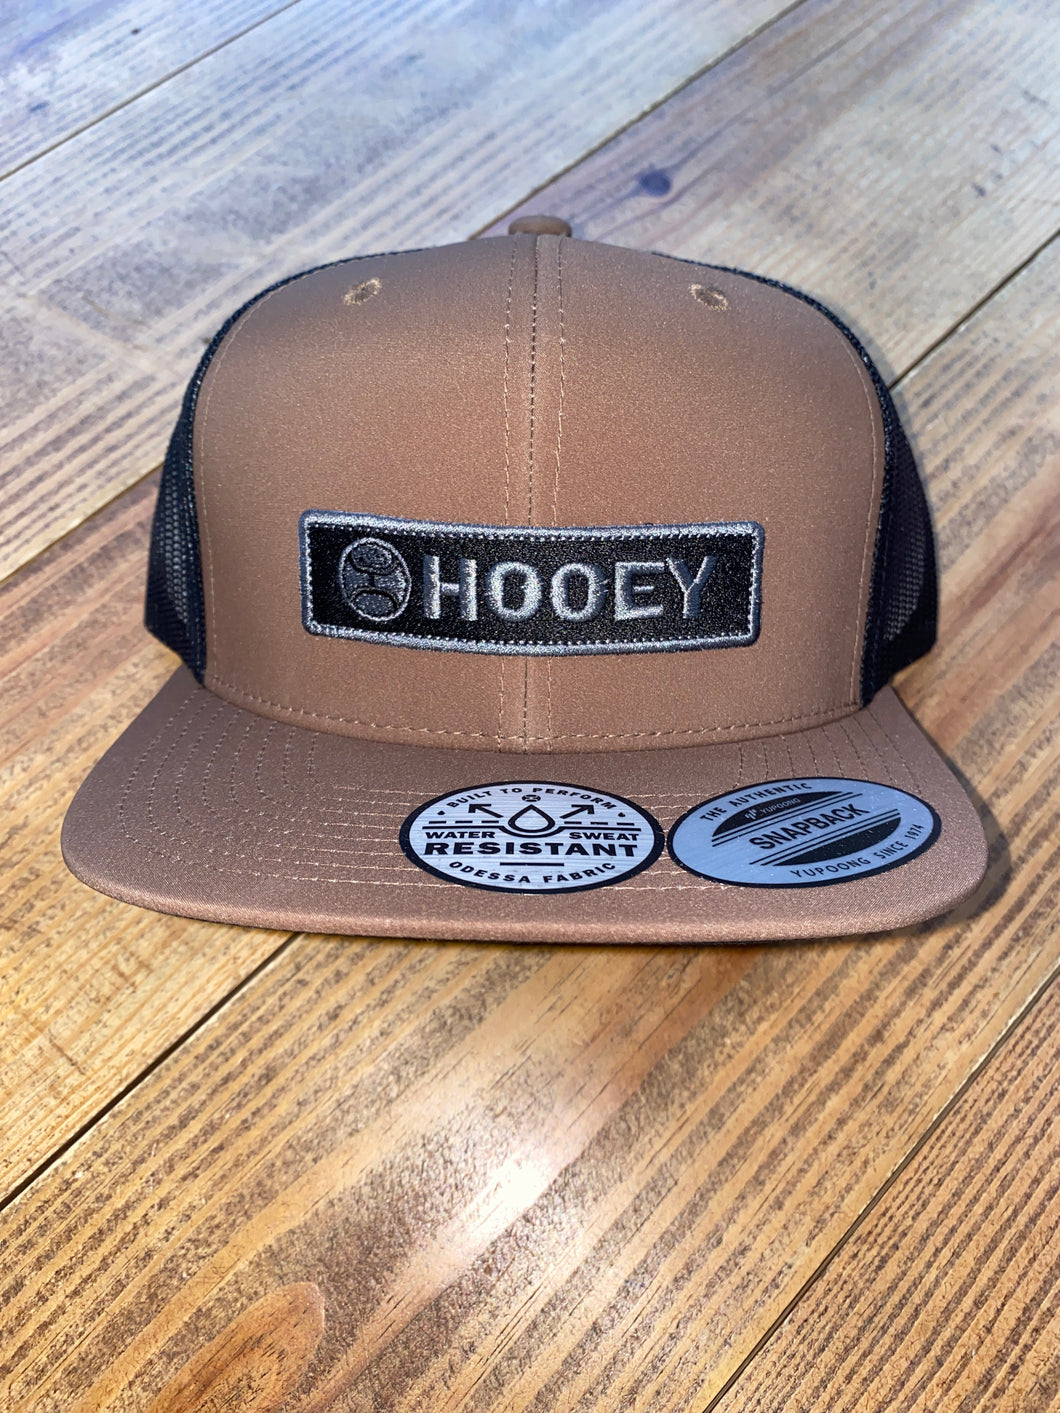 Hooey “Lockup” Brown and Black Trucker Cap